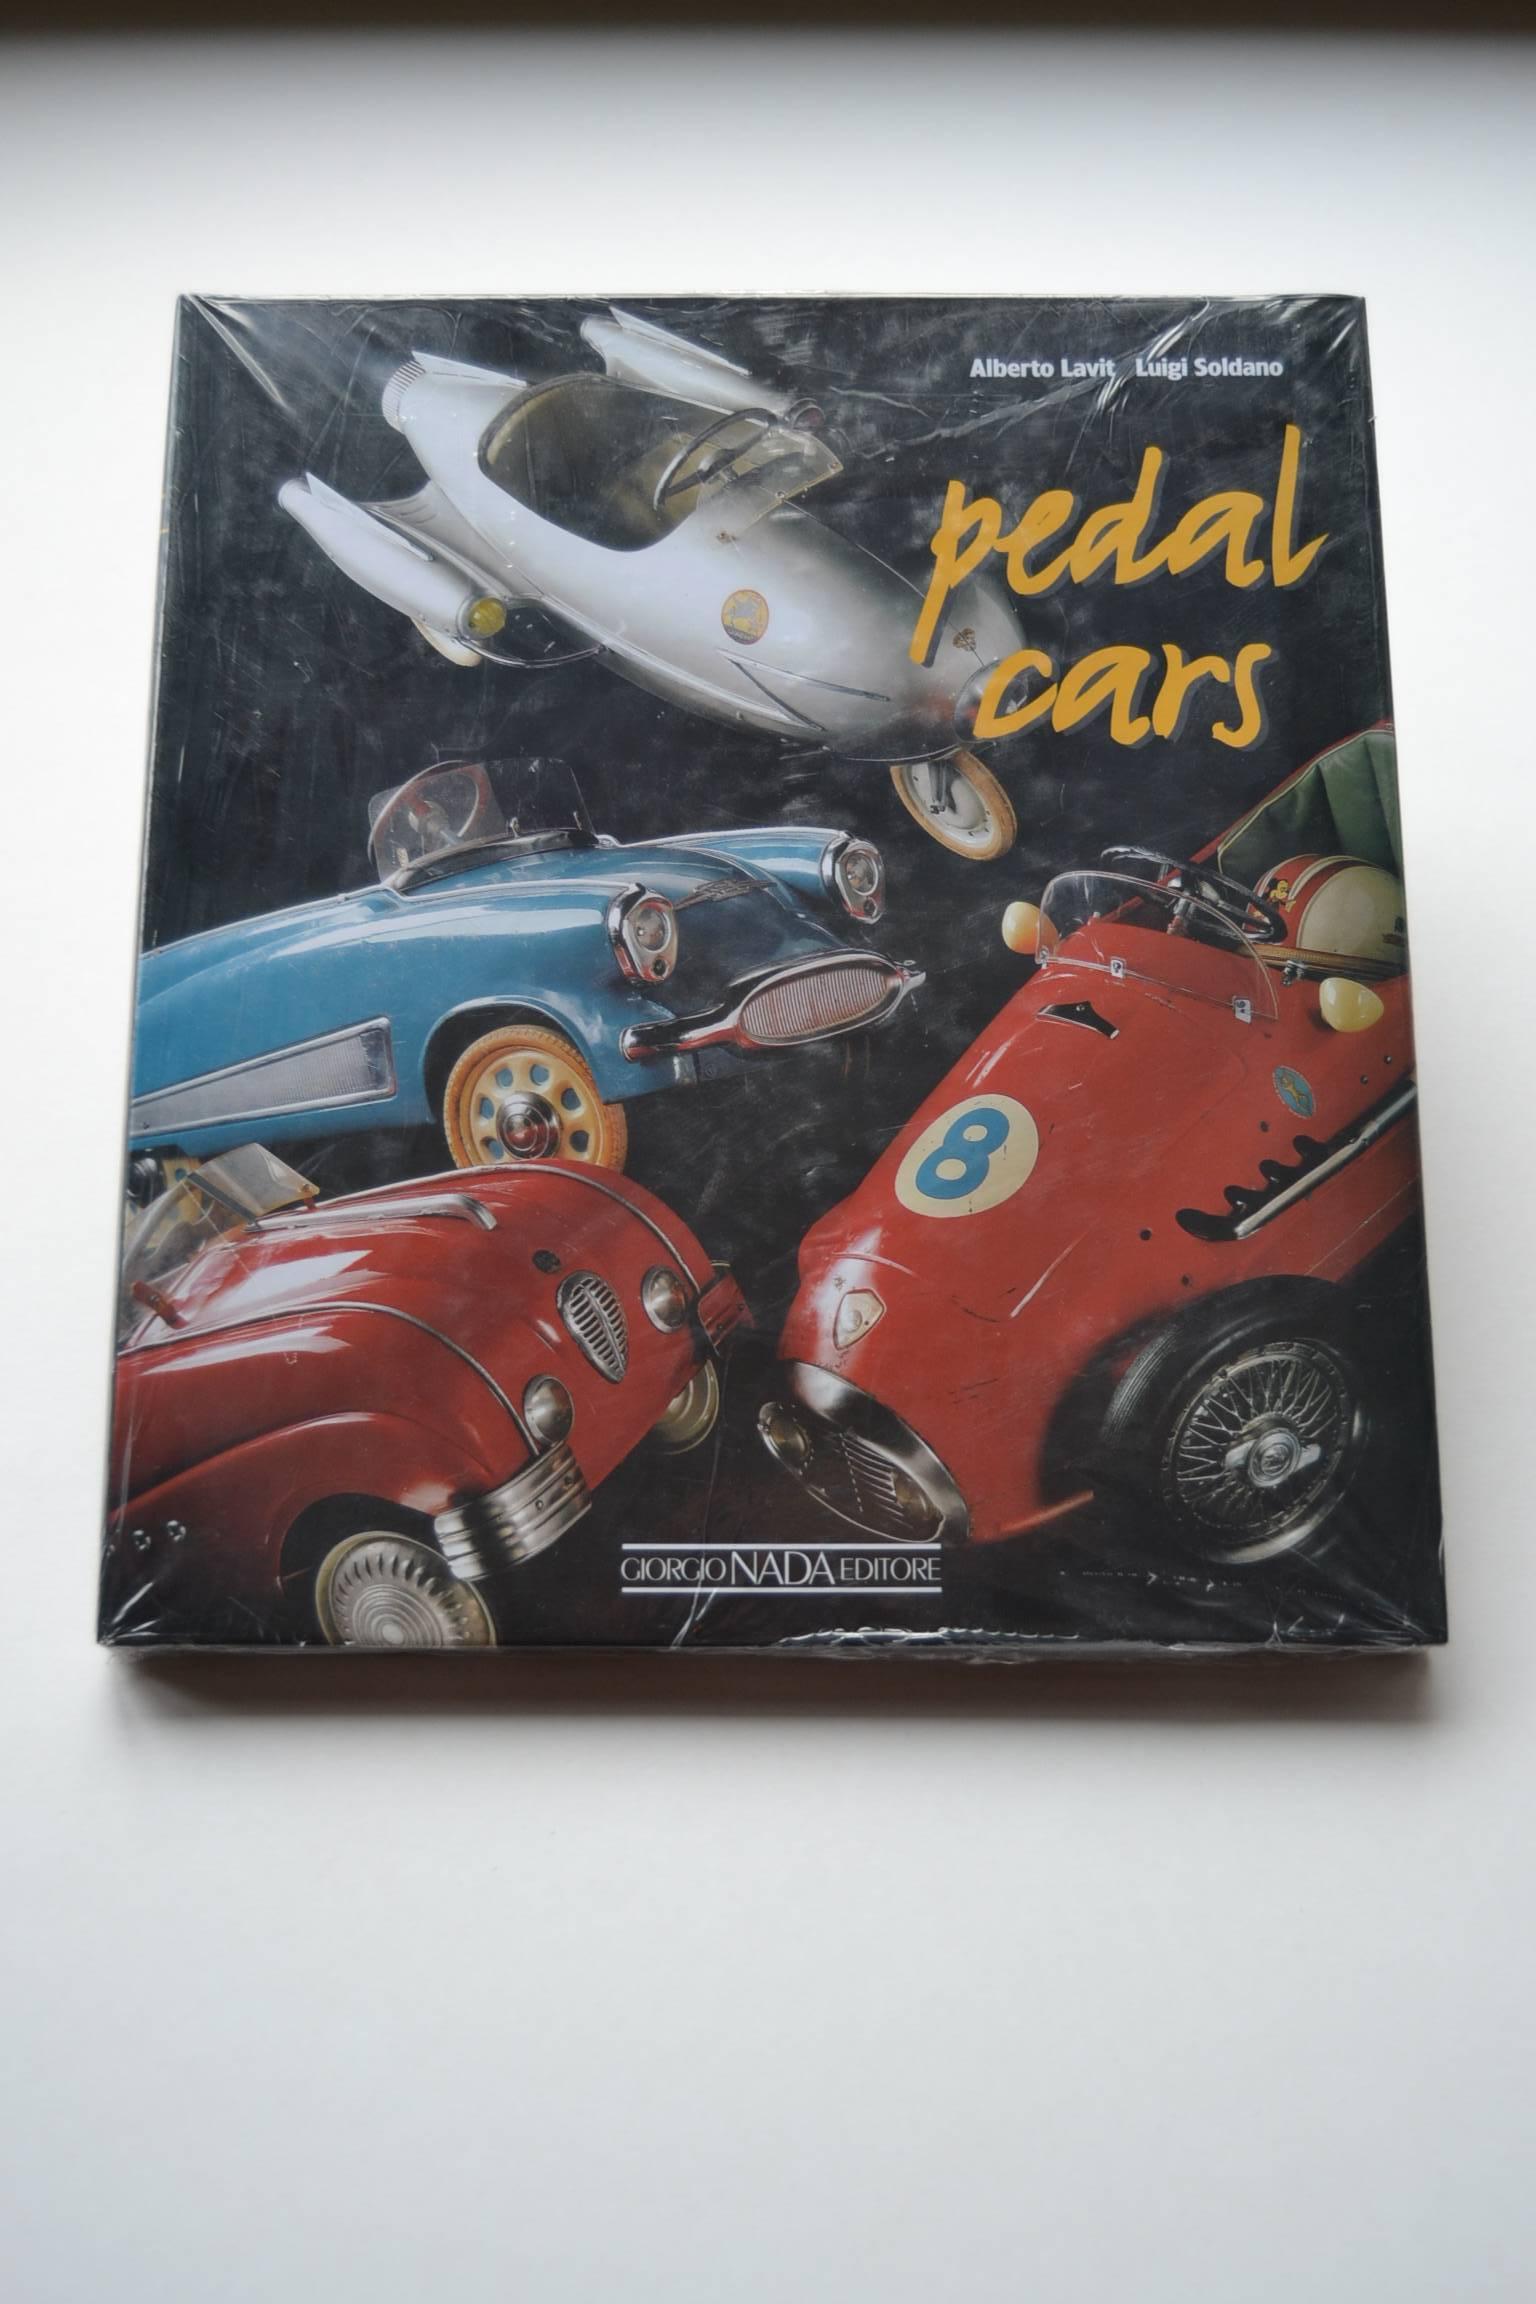 Contemporary Italian Pedal Cars Book by Alberto Lavit 